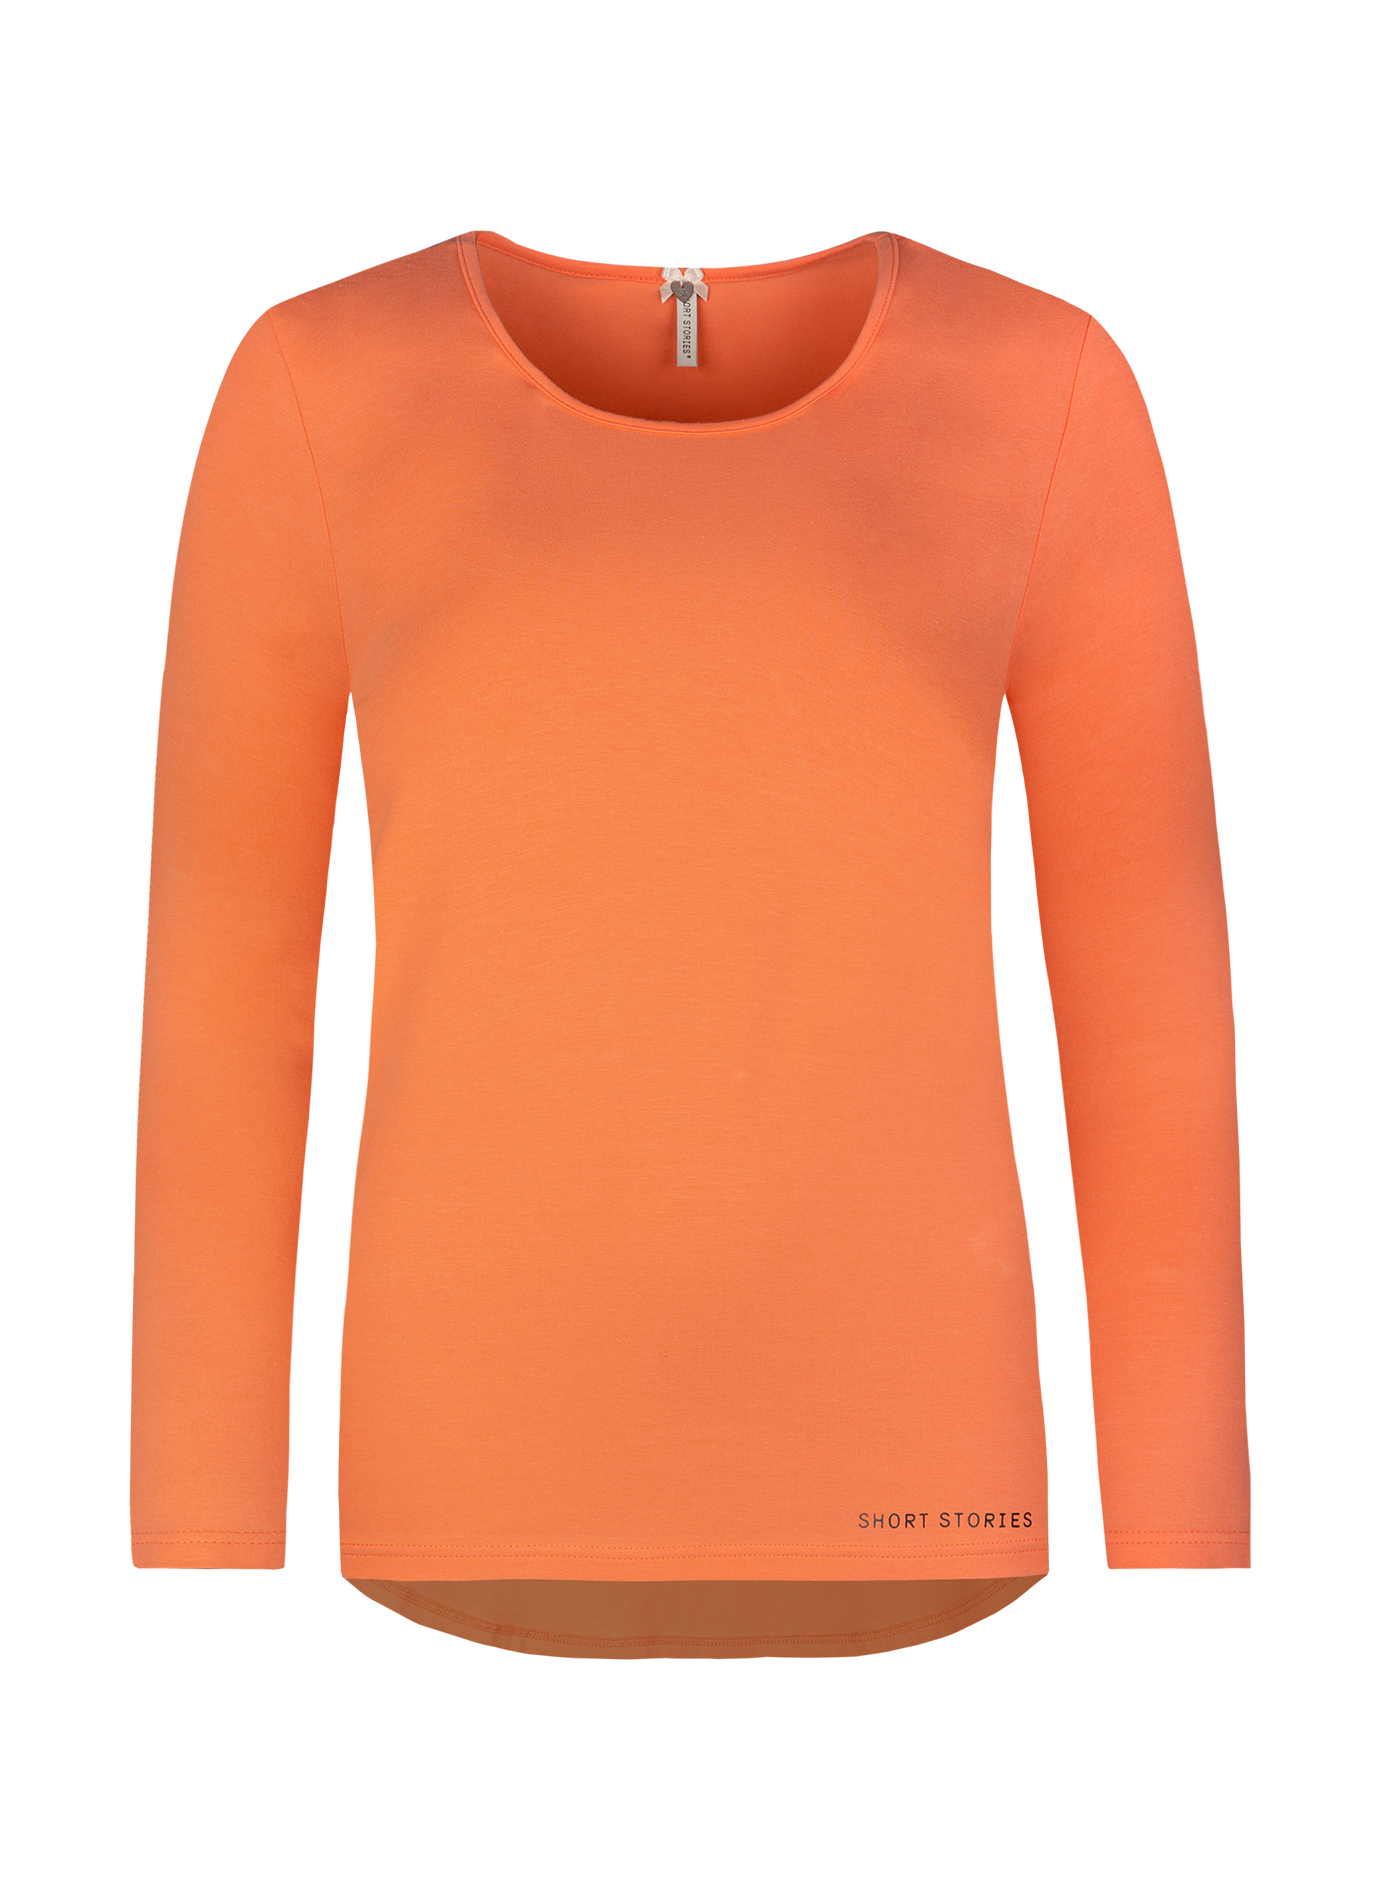 Damen-Langarmshirt Orange